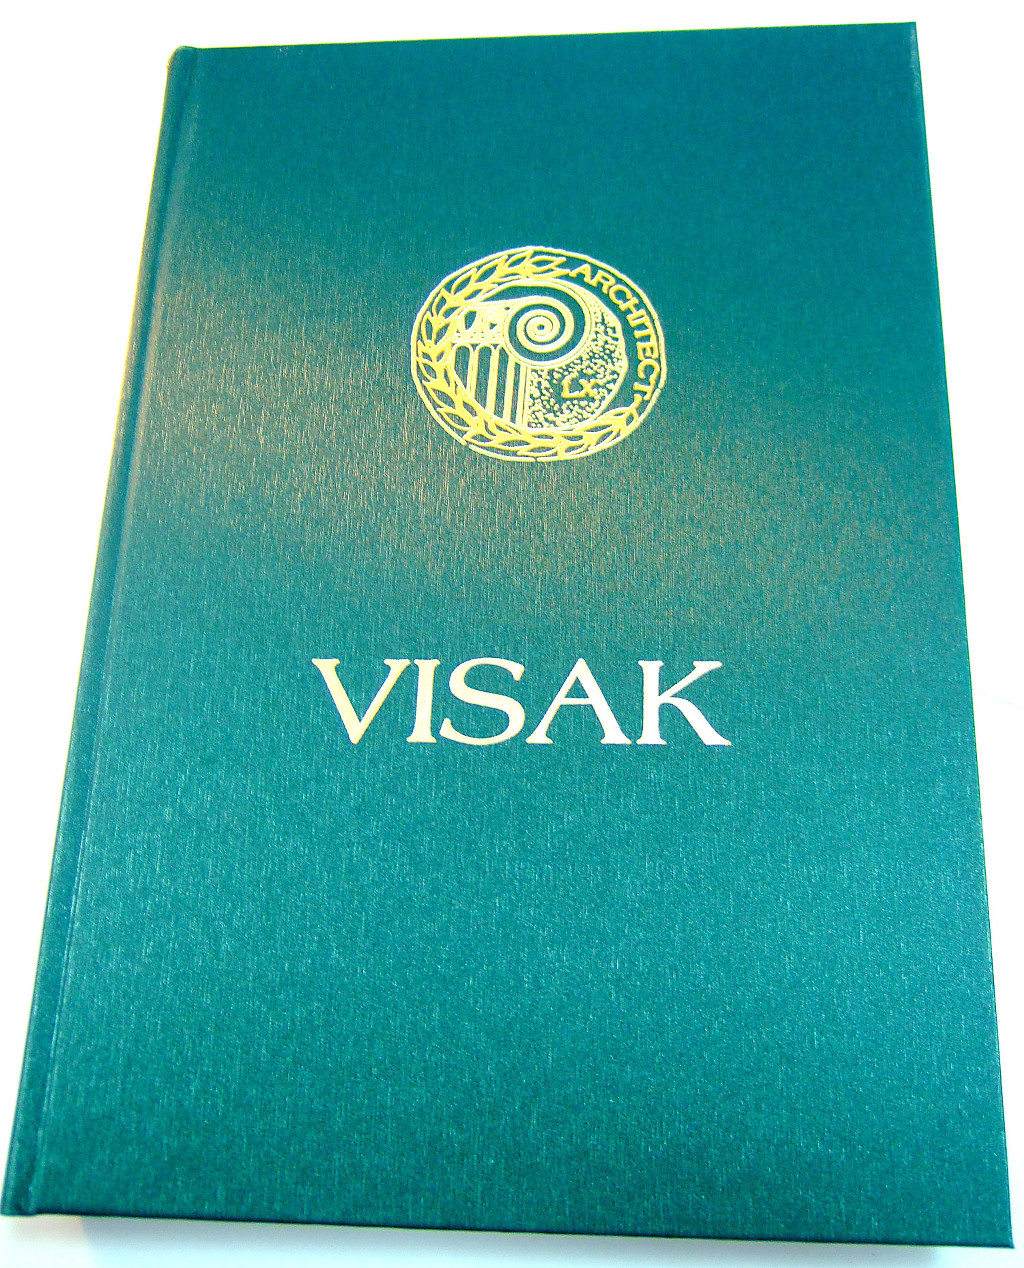 Печать книг «Архитектор Валентин Исак (VISAK)». Полиграфия типографии Макрос, изготовление книг, спецификация 965991-1